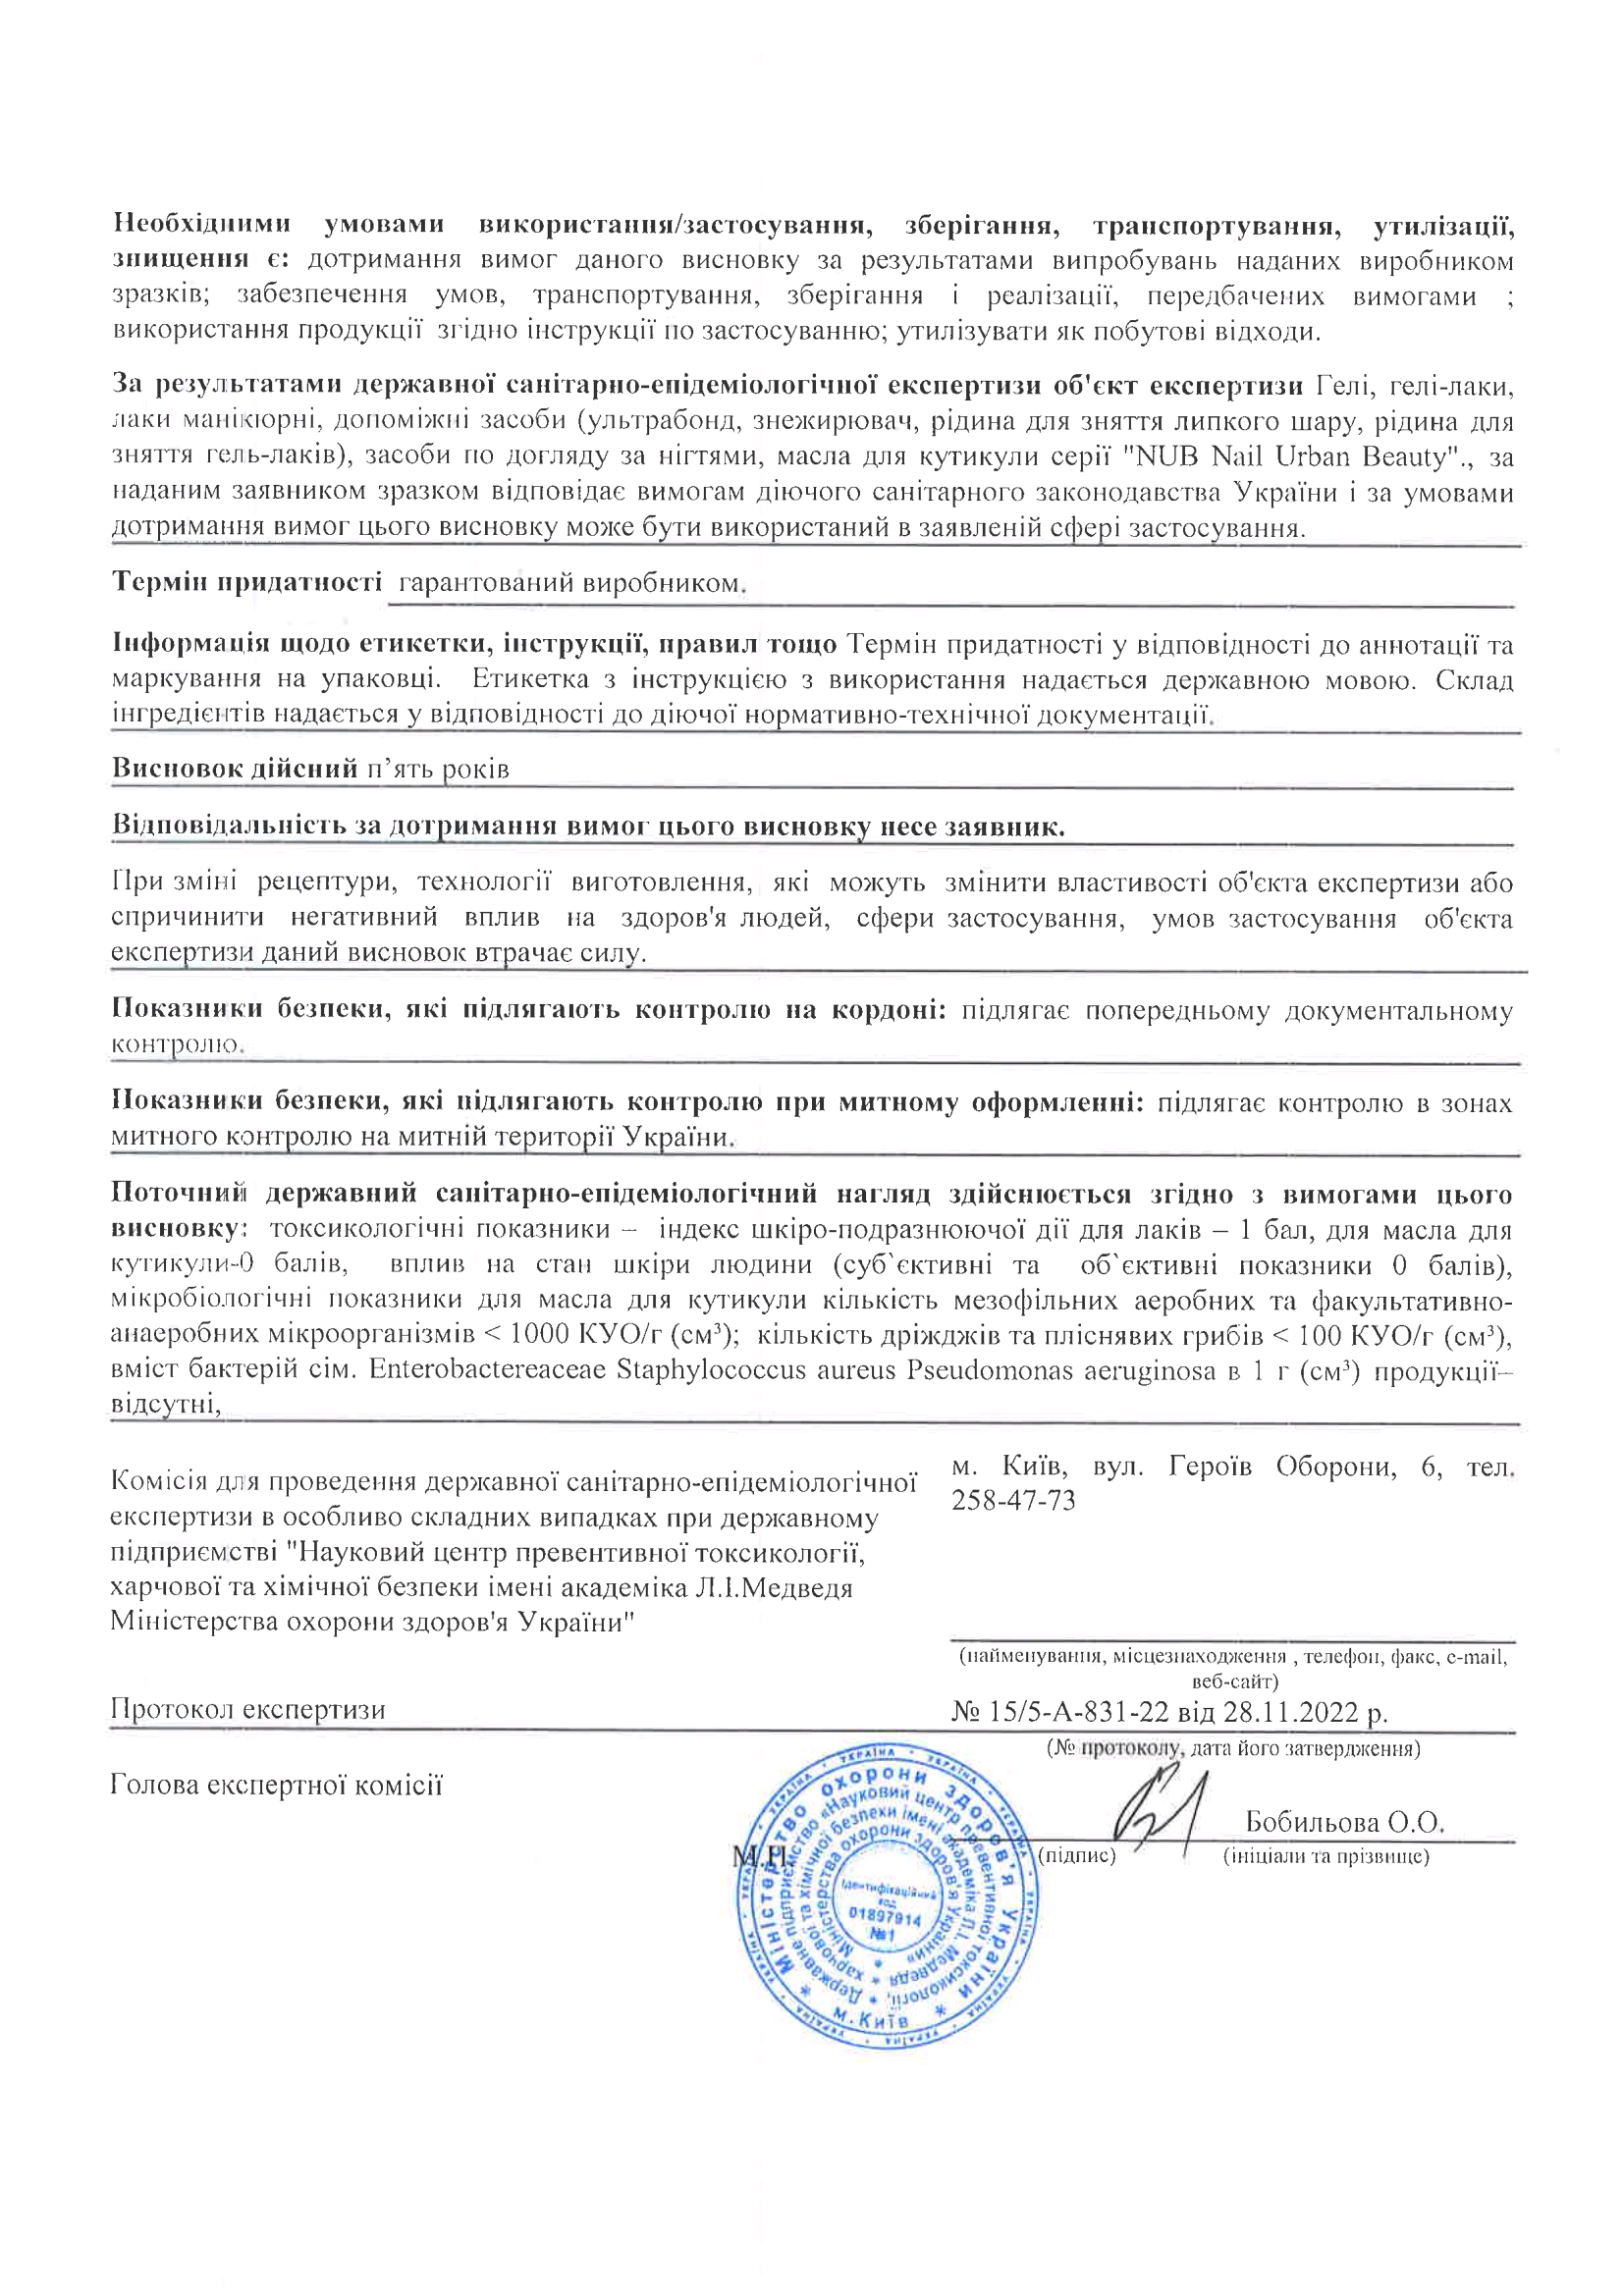 Сертификат качества на гель-лаки NUB, страница 2